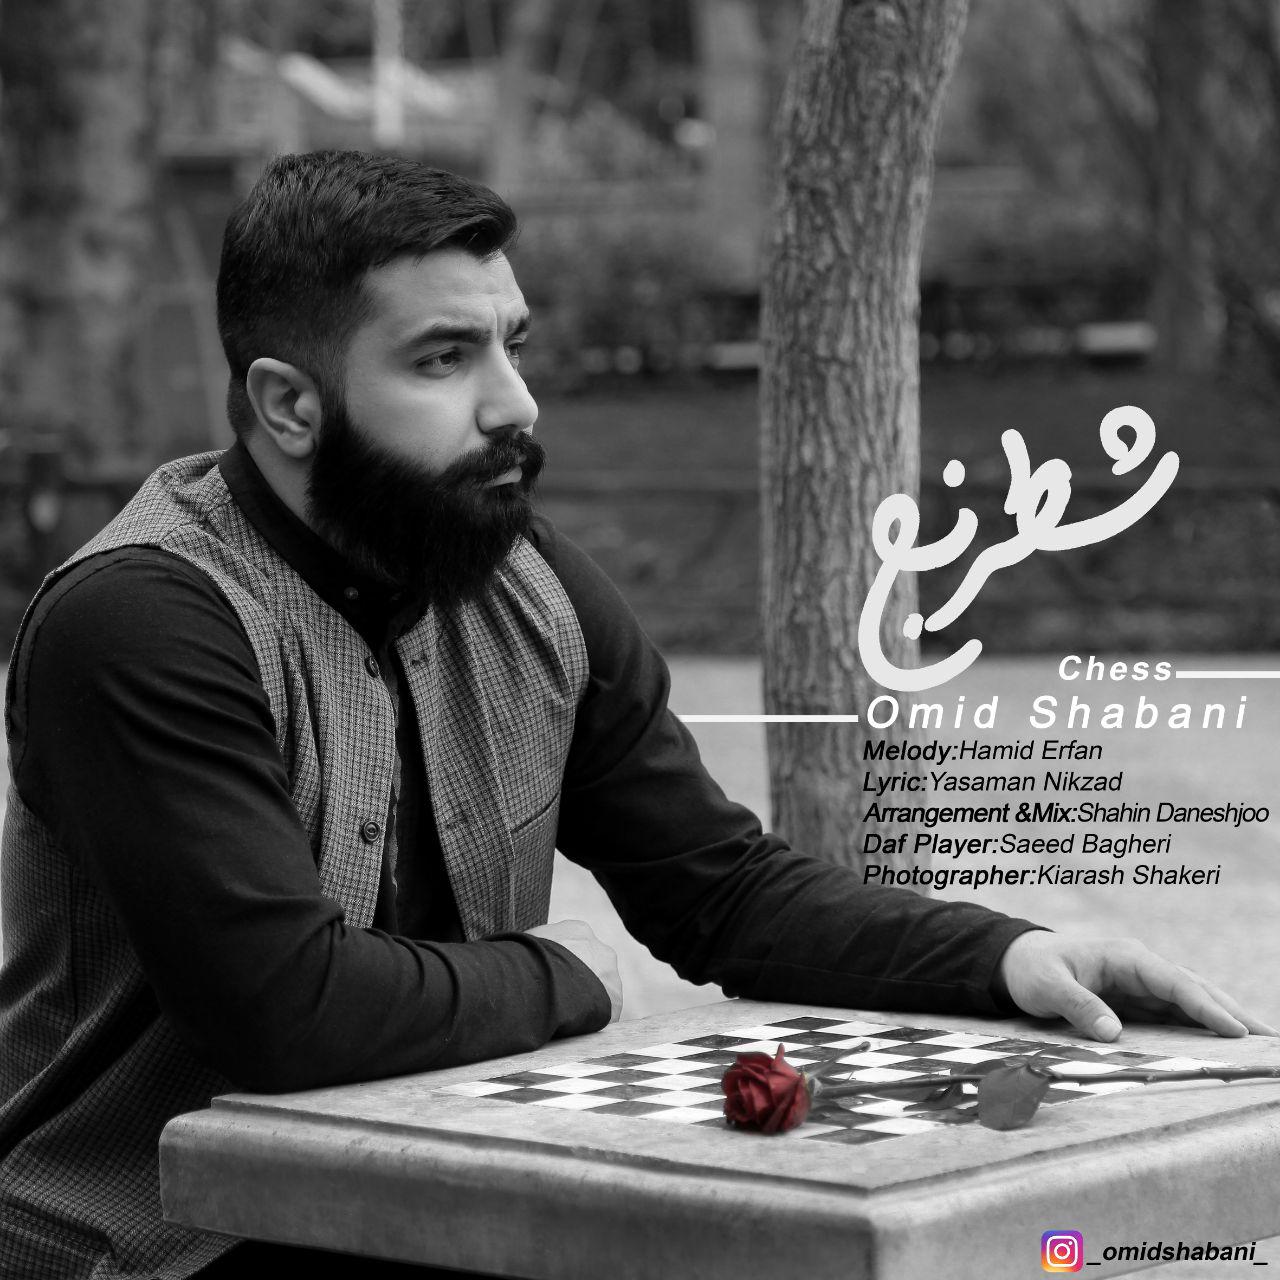  دانلود آهنگ جدید امید شعبانی - شطرنج | Download New Music By Omid Shabani - Shatranj